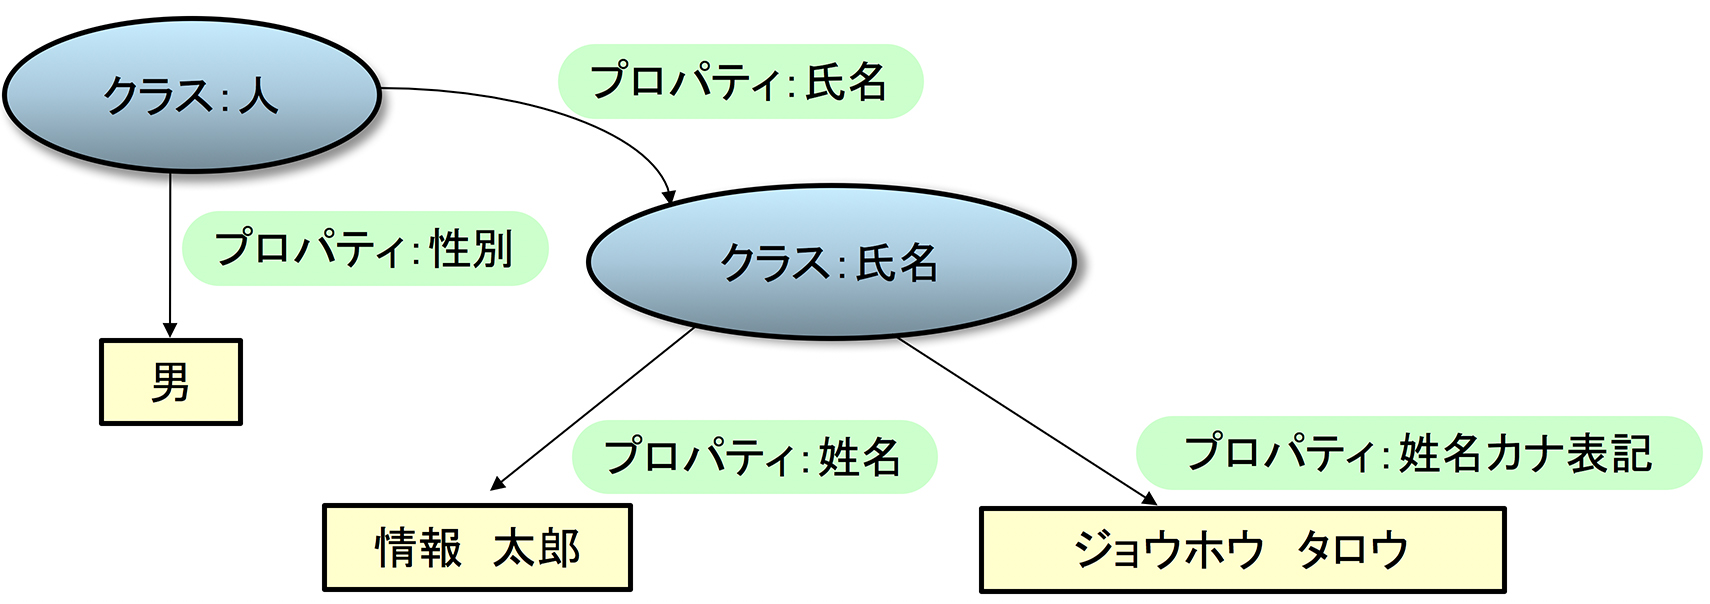 図2: クラス用語とプロパティ用語による語彙の階層構造